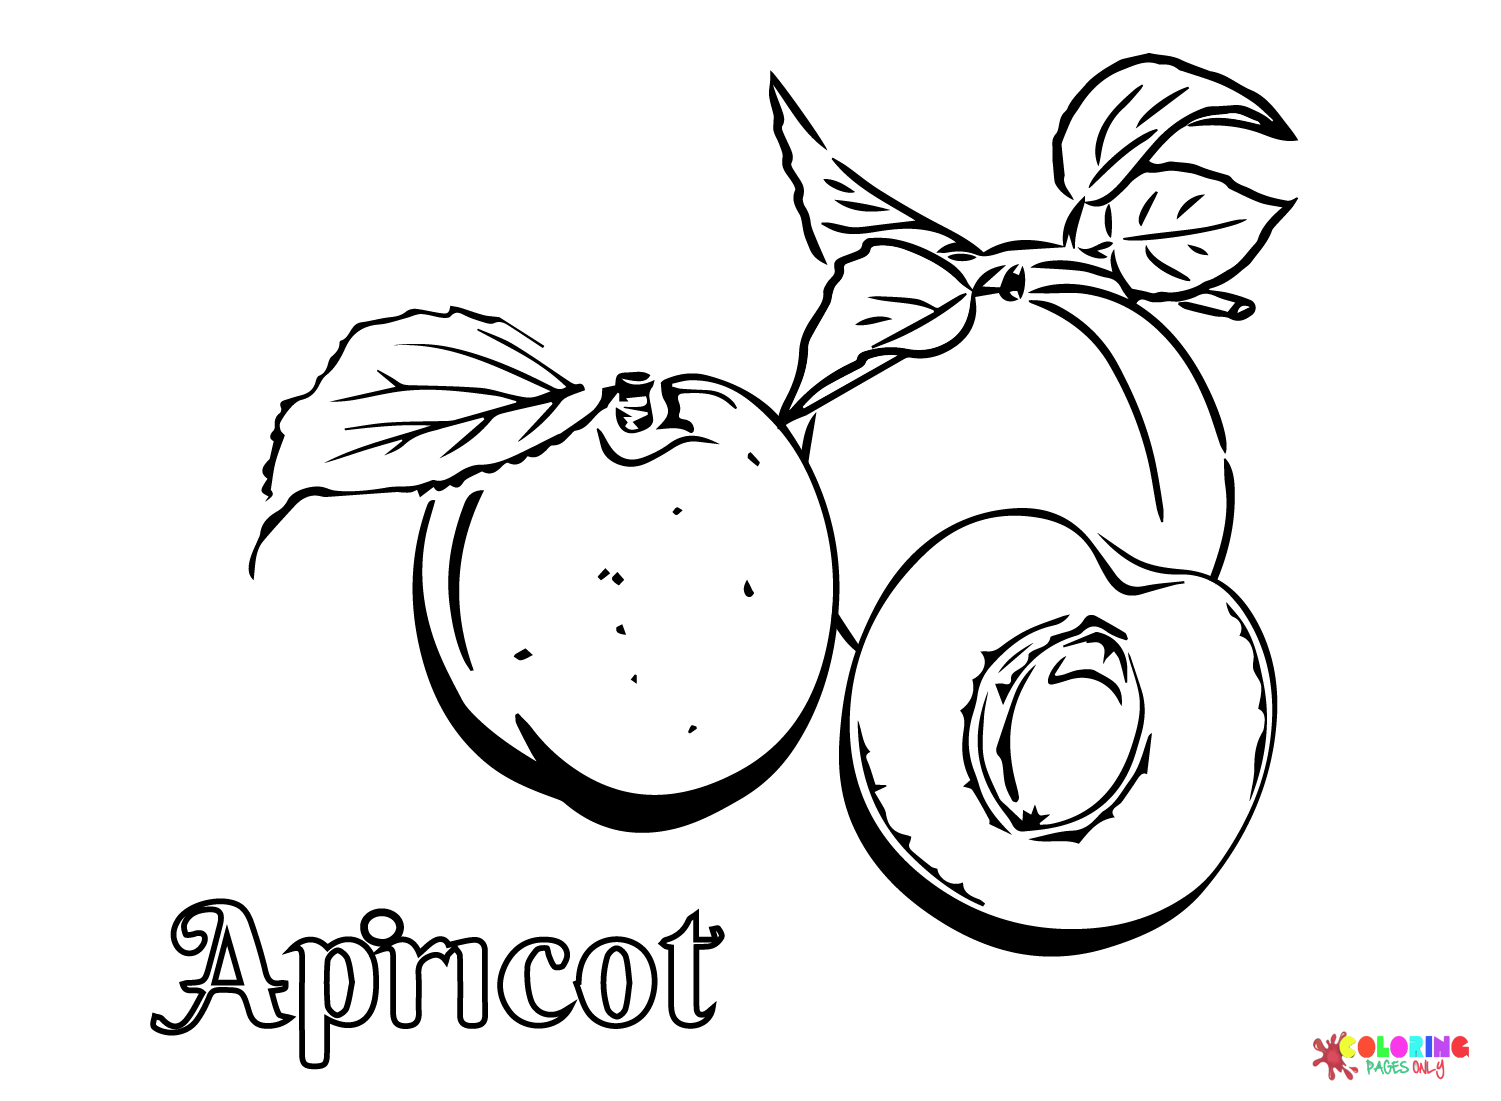 Imprimer Fruit d'abricot d'abricot